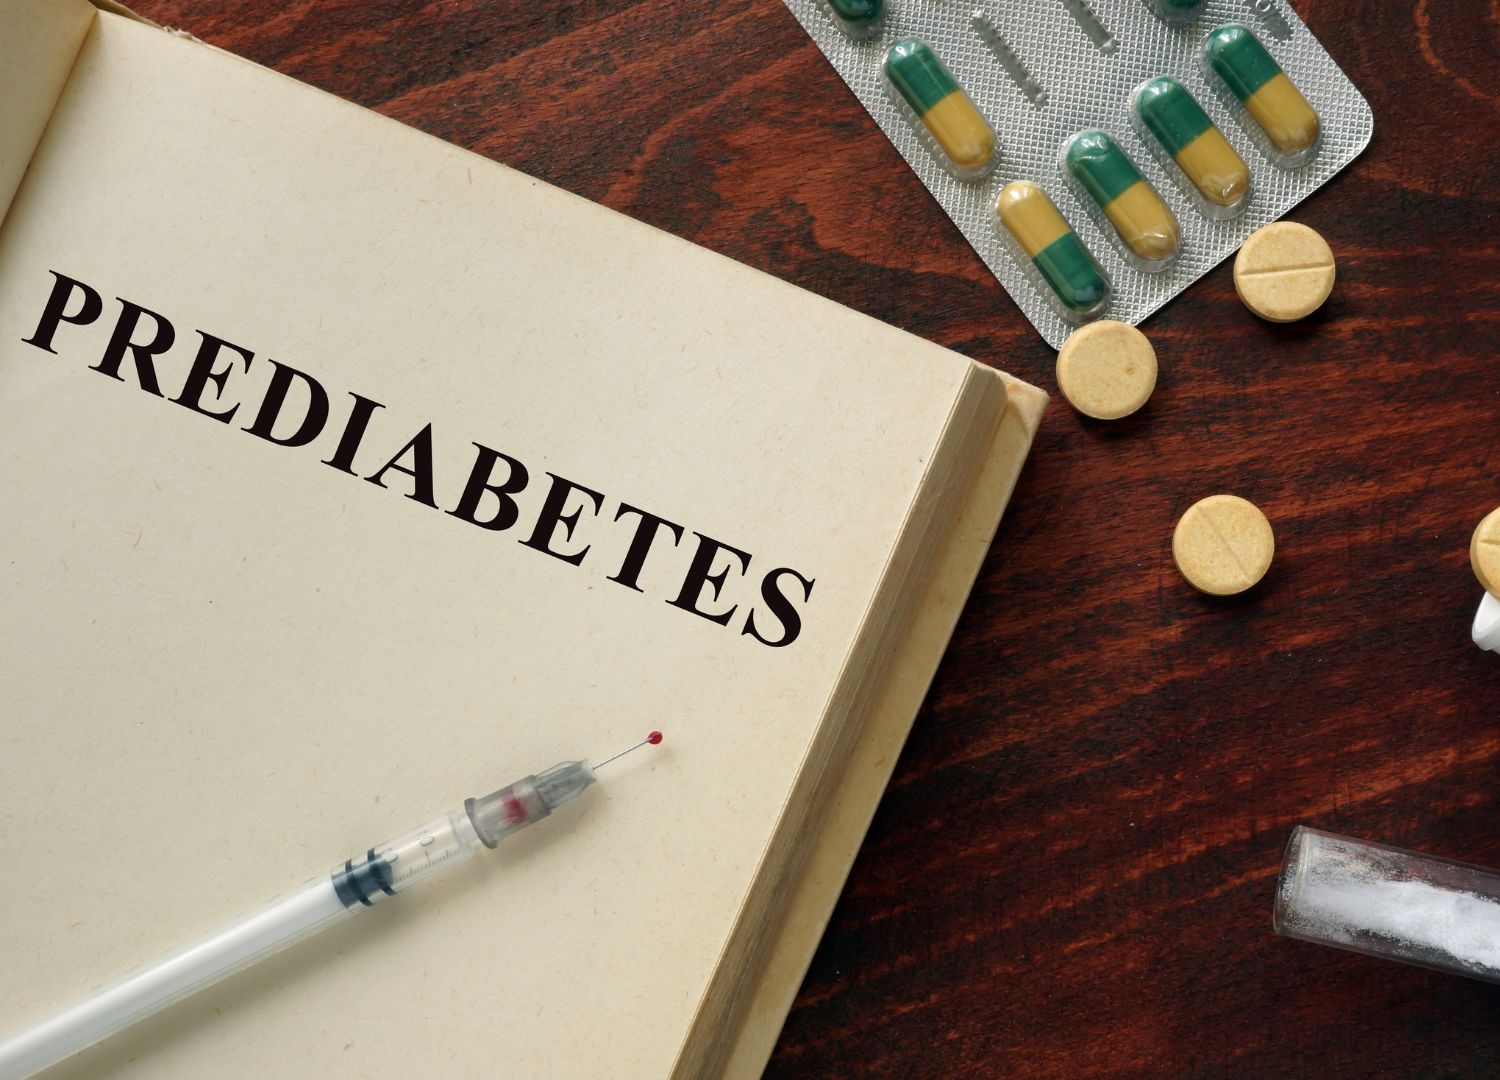 Prediabetes: A warning before diabetes sets in